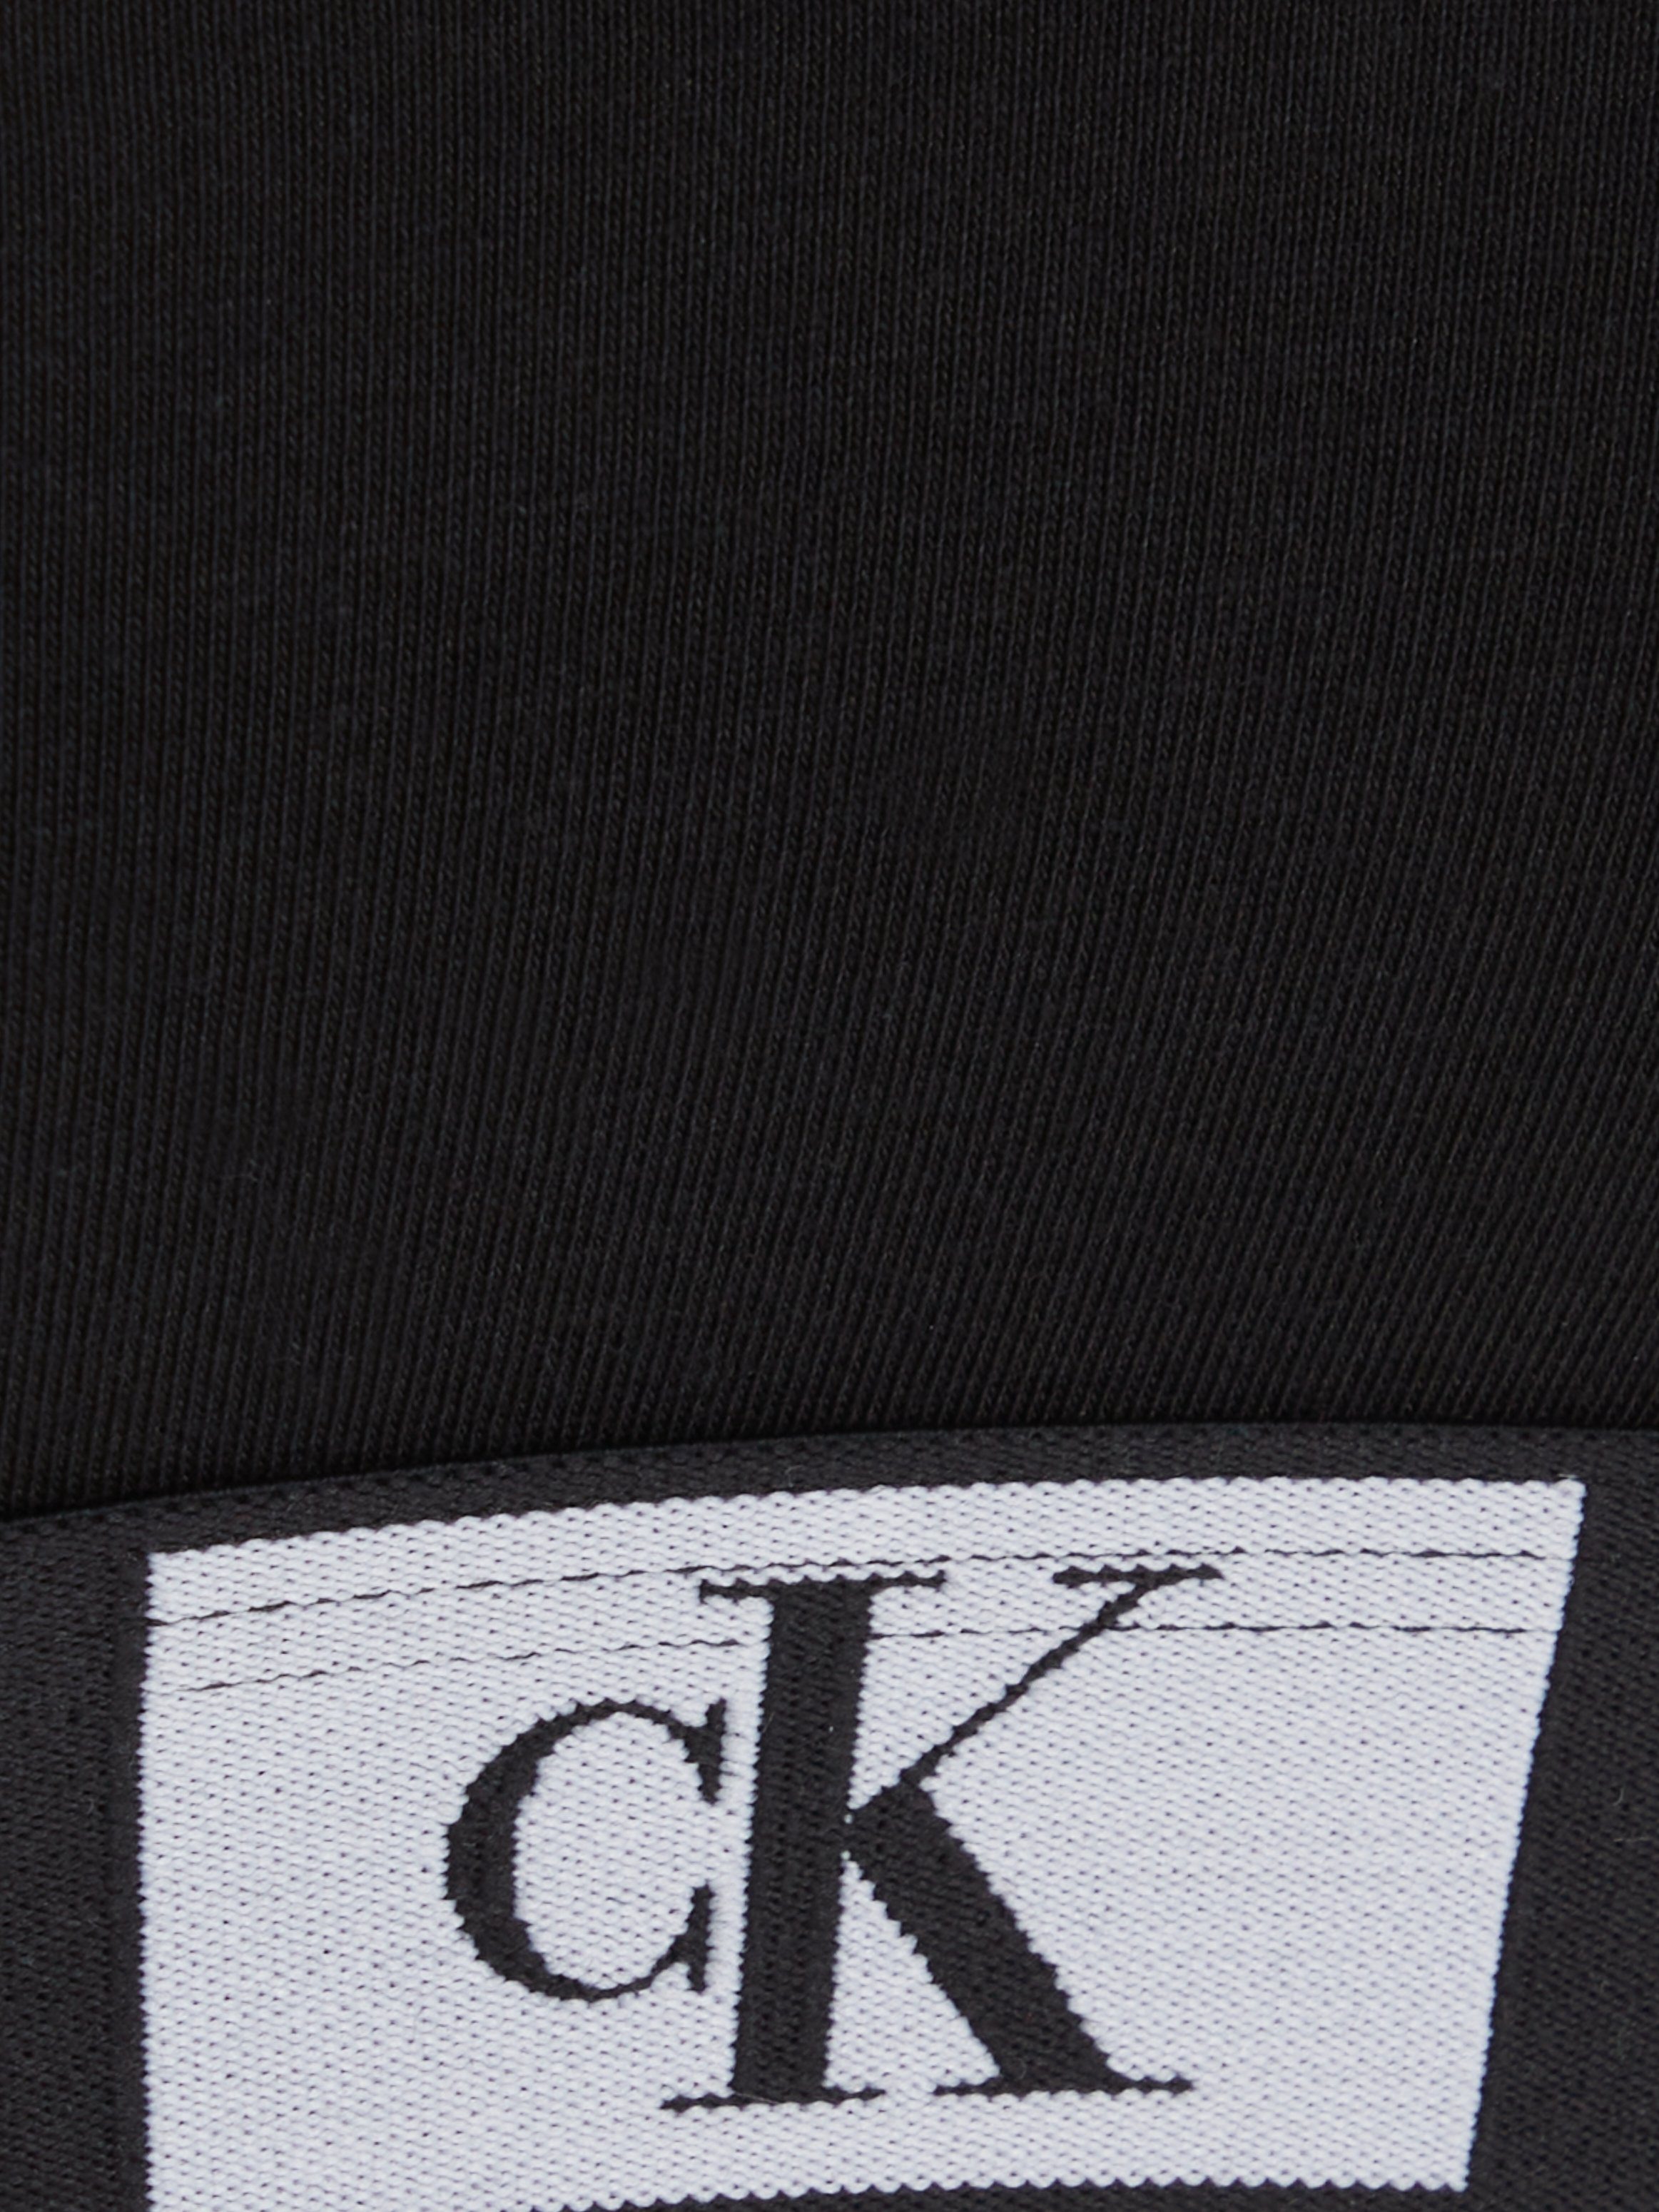 Calvin Klein Underwear BRALETTE UNLINED Bralette-BH mit BLACK Alloverprint